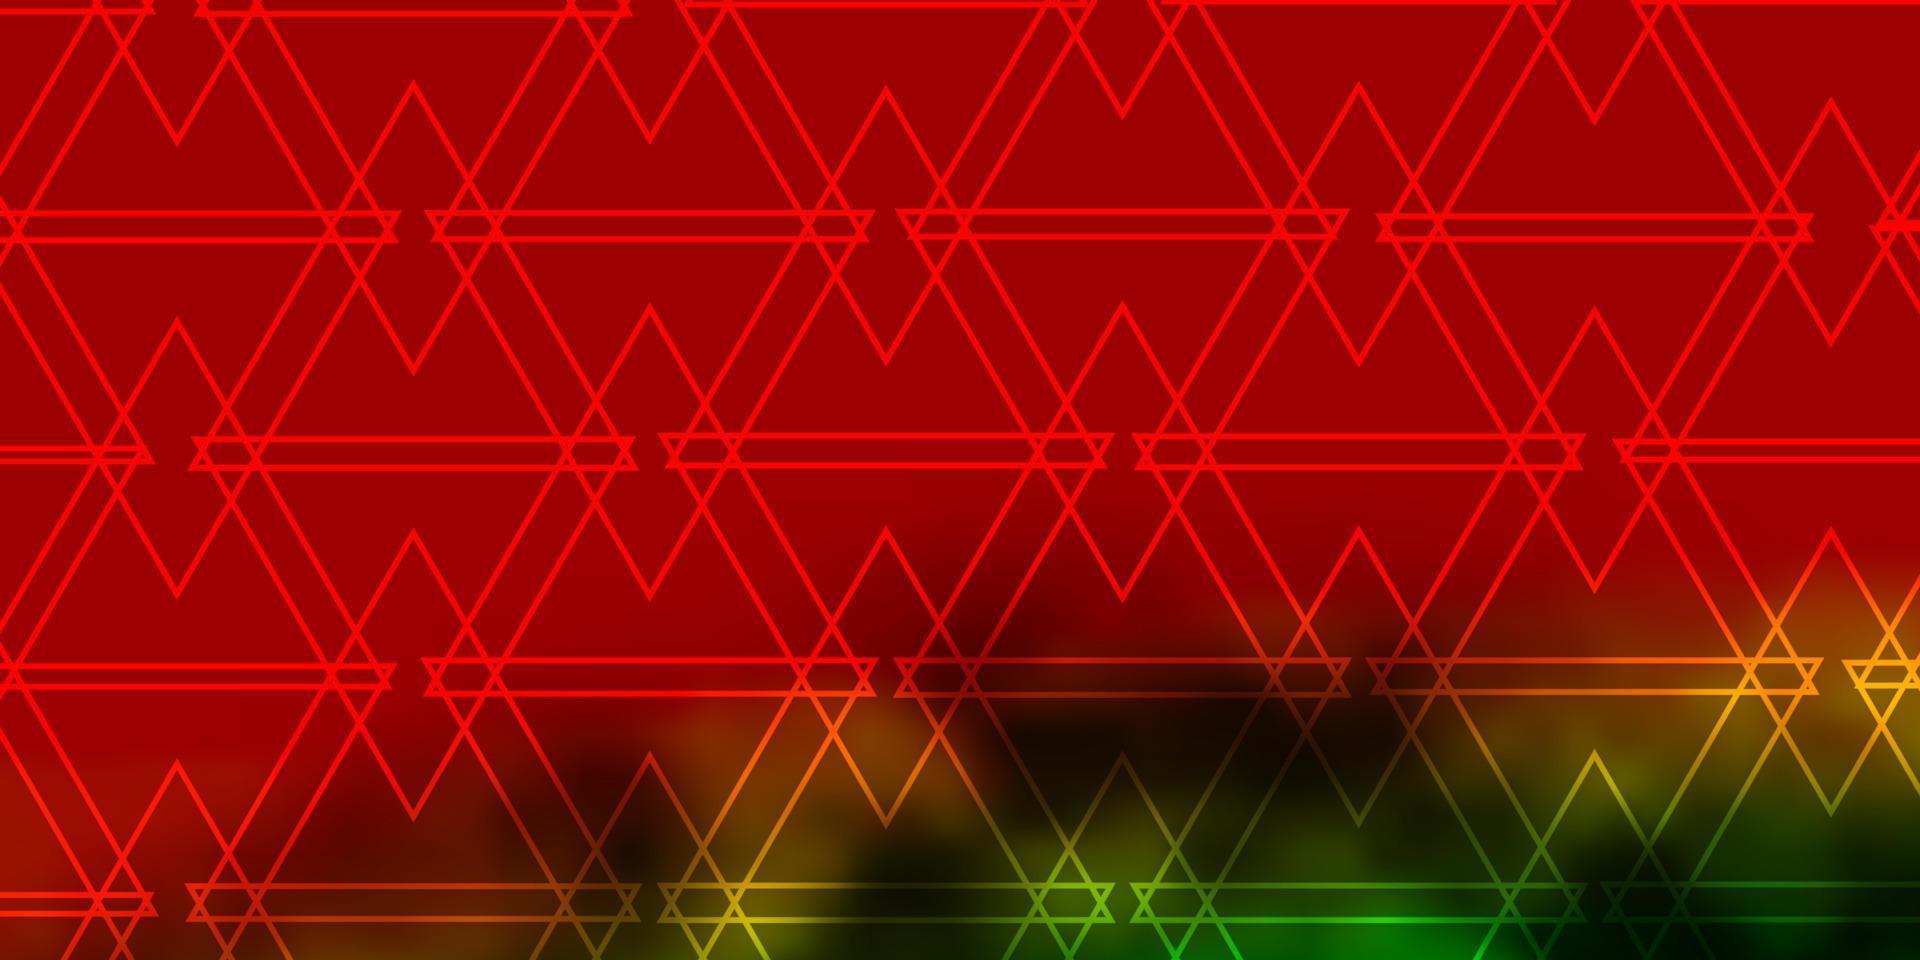 donkere veelkleurige vector sjabloon met kristallen, driehoeken.